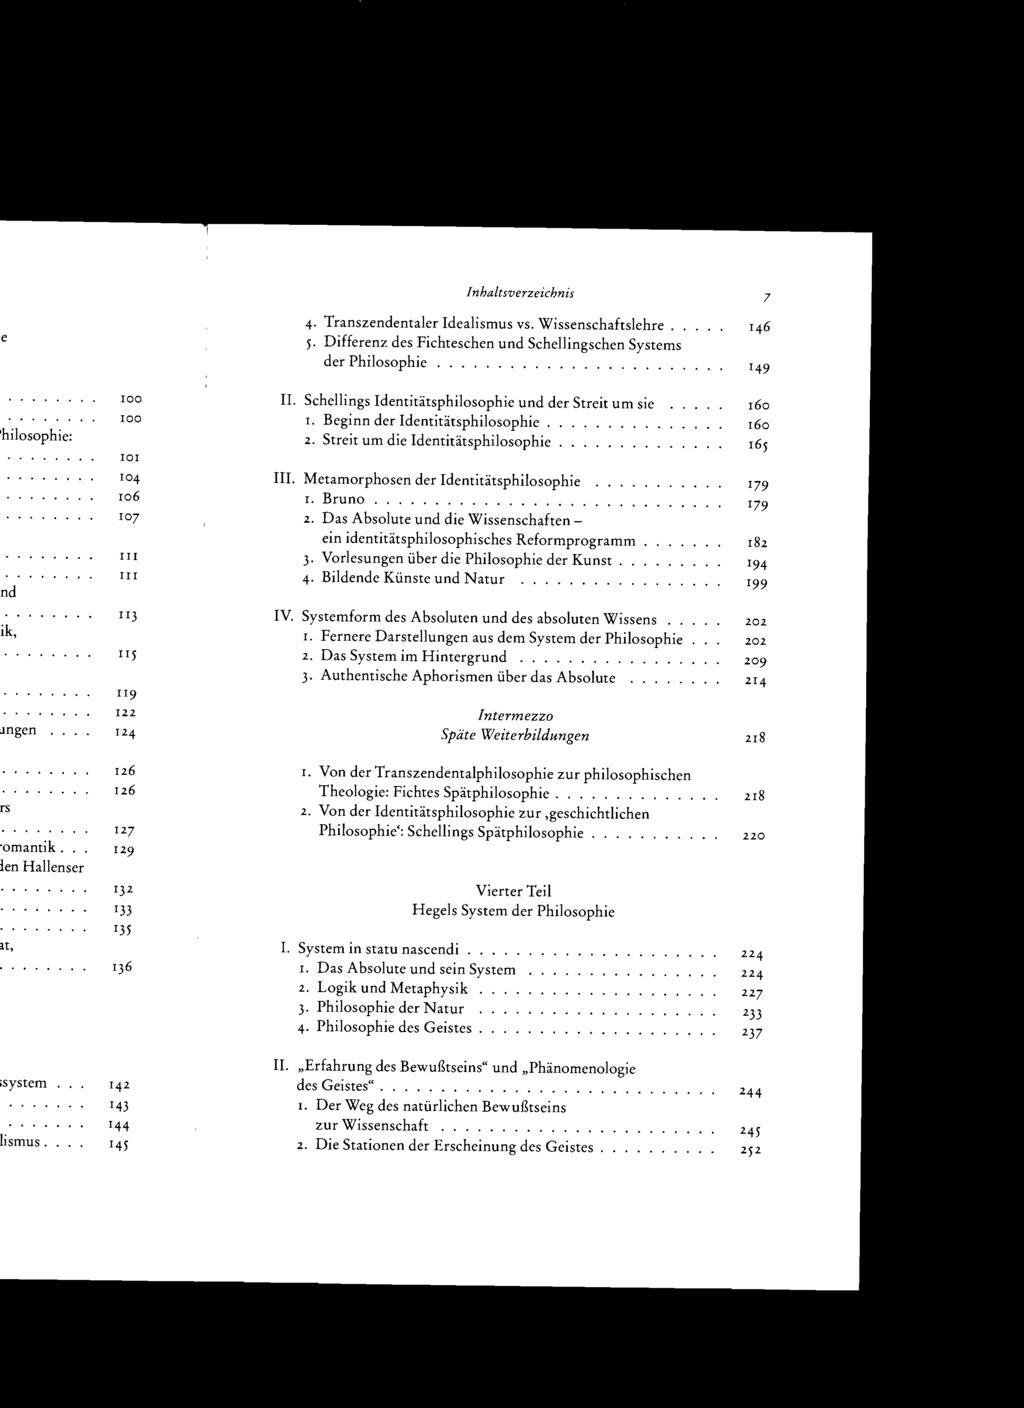 Inhaltsverzeichnis 4. Transzendentaler Idealismus vs. Wissenschaftslehre. 5. Differenz des Fichteschen und Schellingschen Systems der Philosophie................... II.